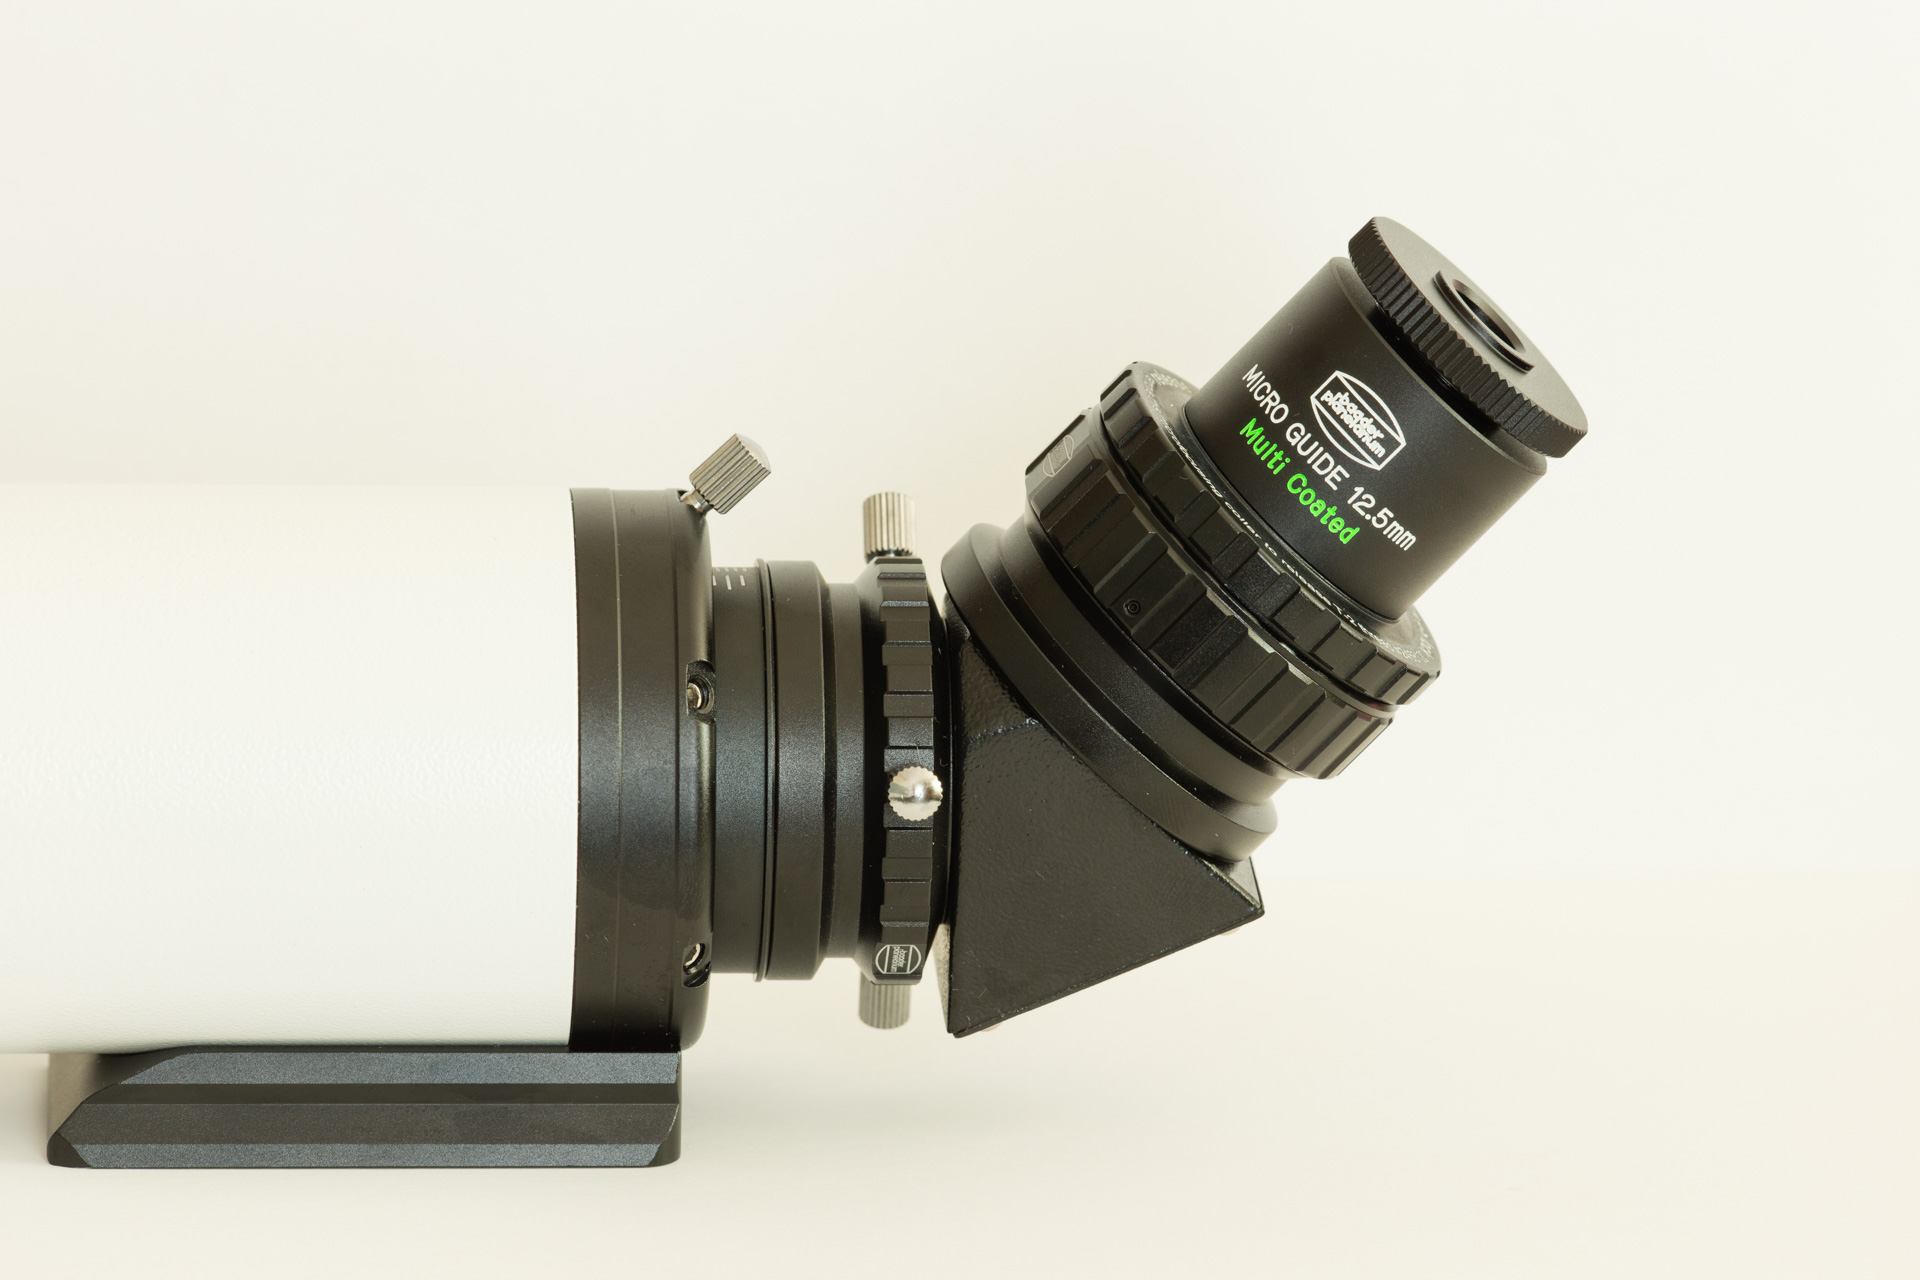 Baader MicroGuide Messfeldokular mit Log-Pot Beleuchtungseinrichtung -  Spezialokulare (Guiding, Diascope) - Okulare - Optisches Zubehör - Zubehör